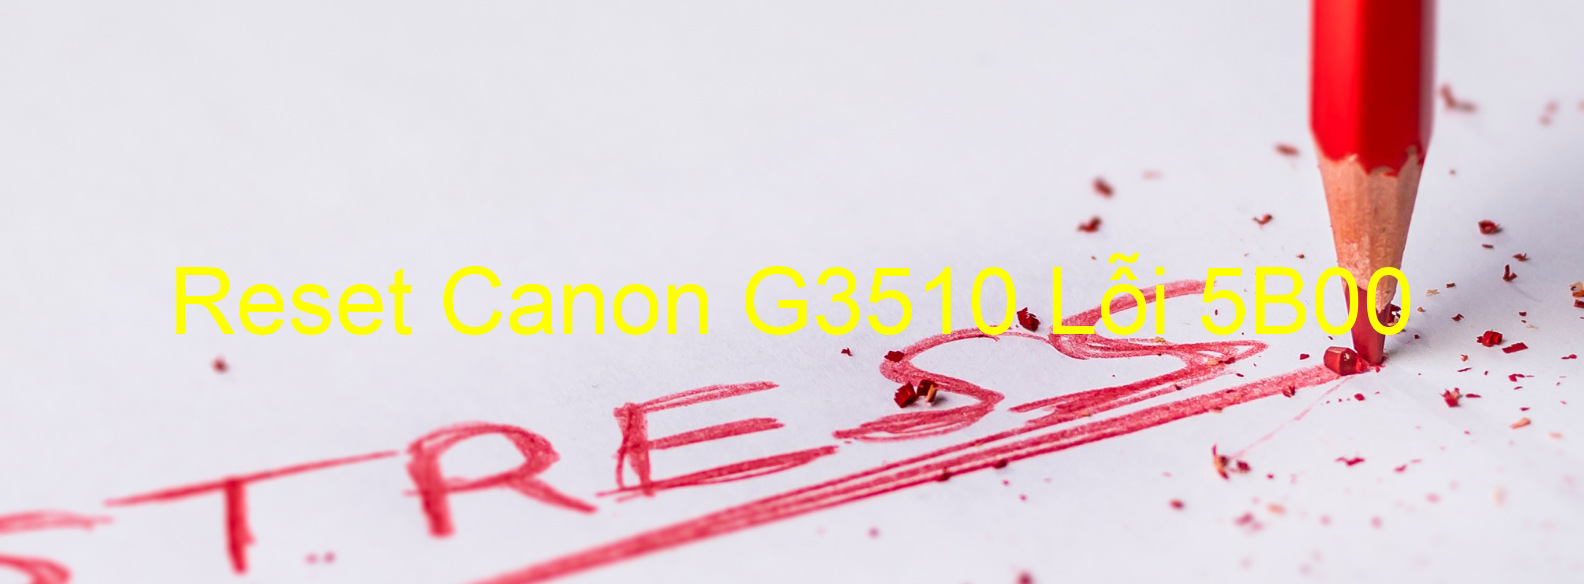 Reset Canon G3510 Lỗi 5B00